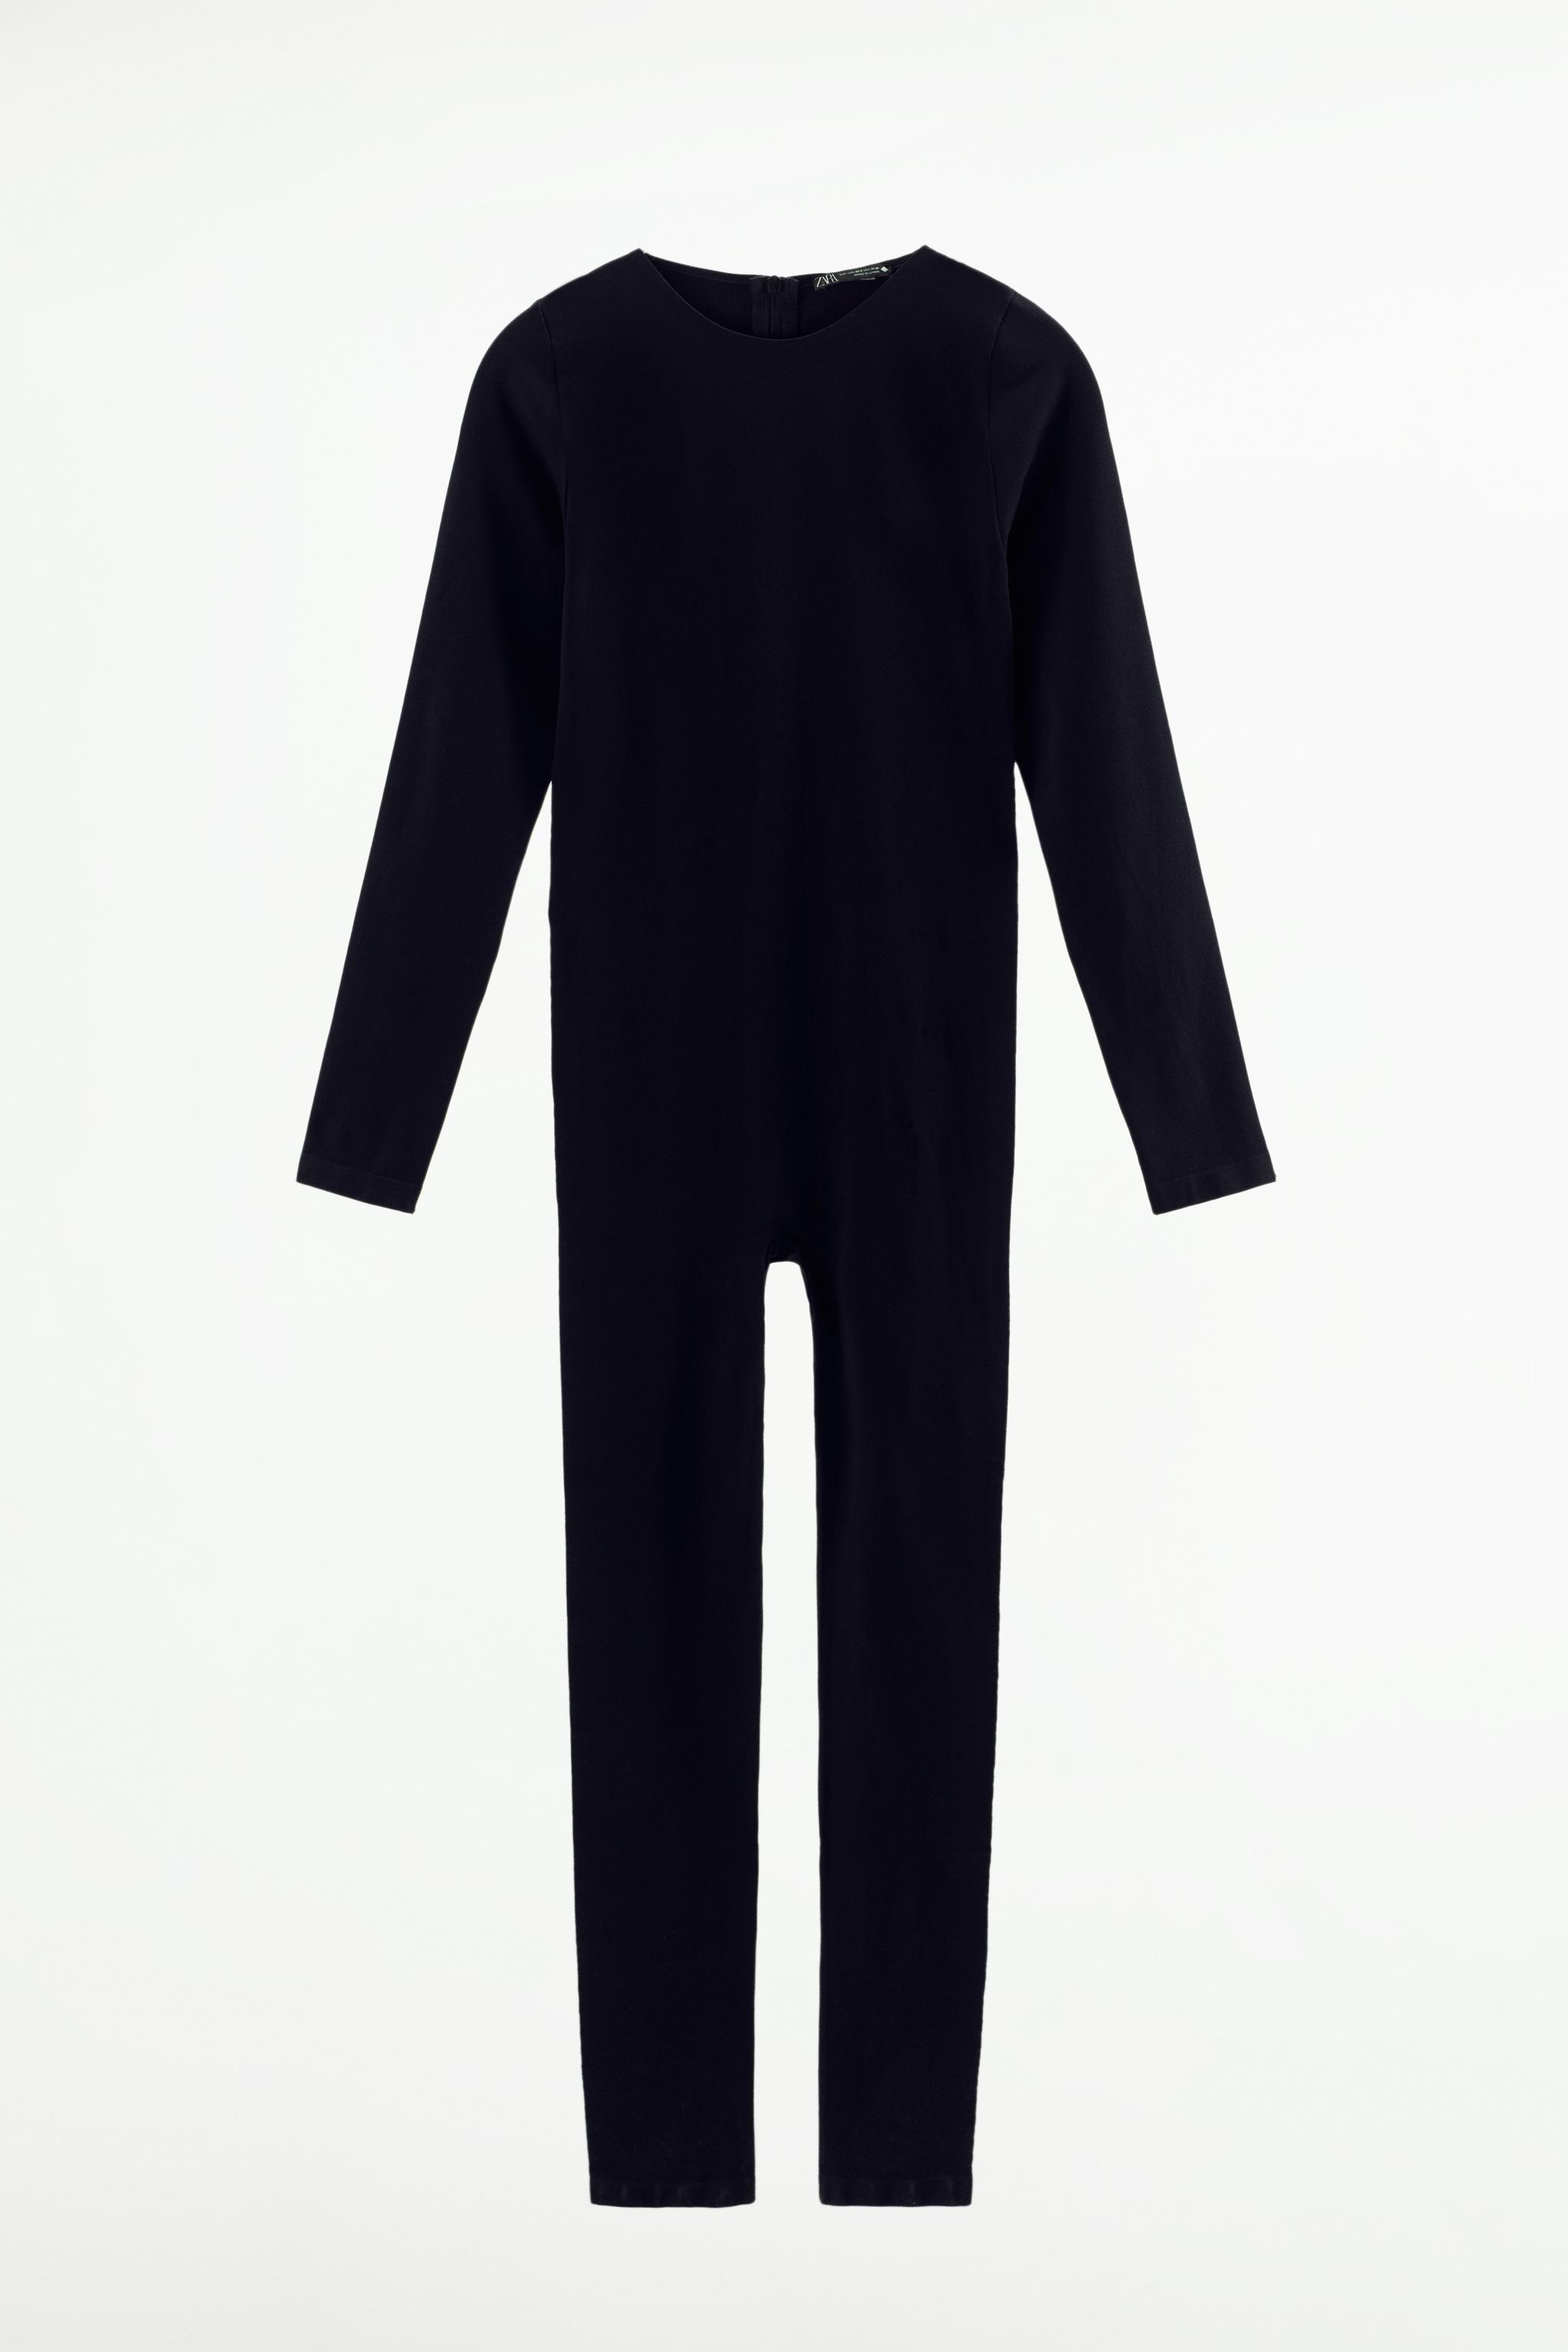 Black Zipper Center Long Sleeve Seamless Jumpsuit